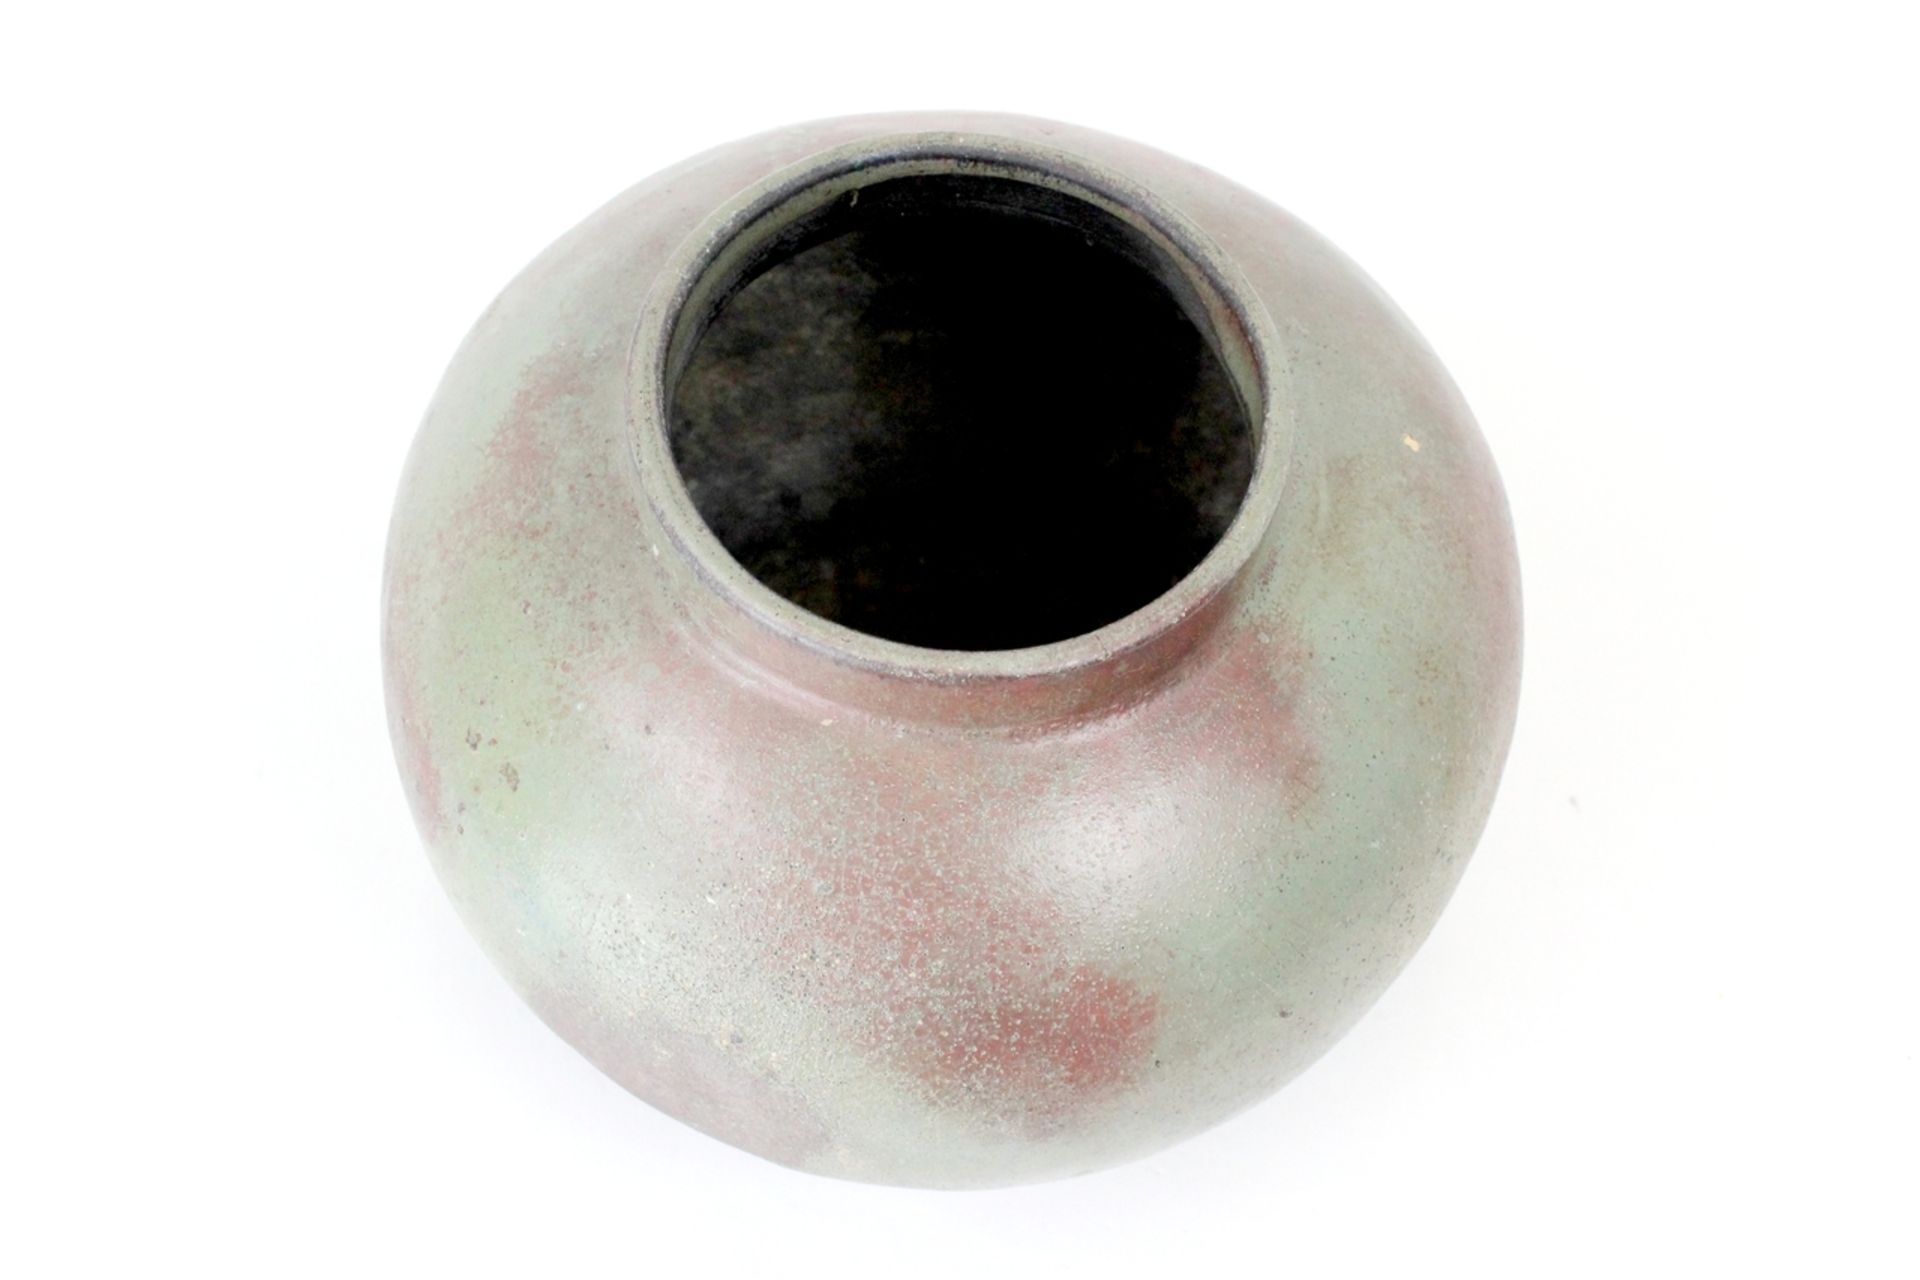 China glasierter Keramiktopf - Image 5 of 6